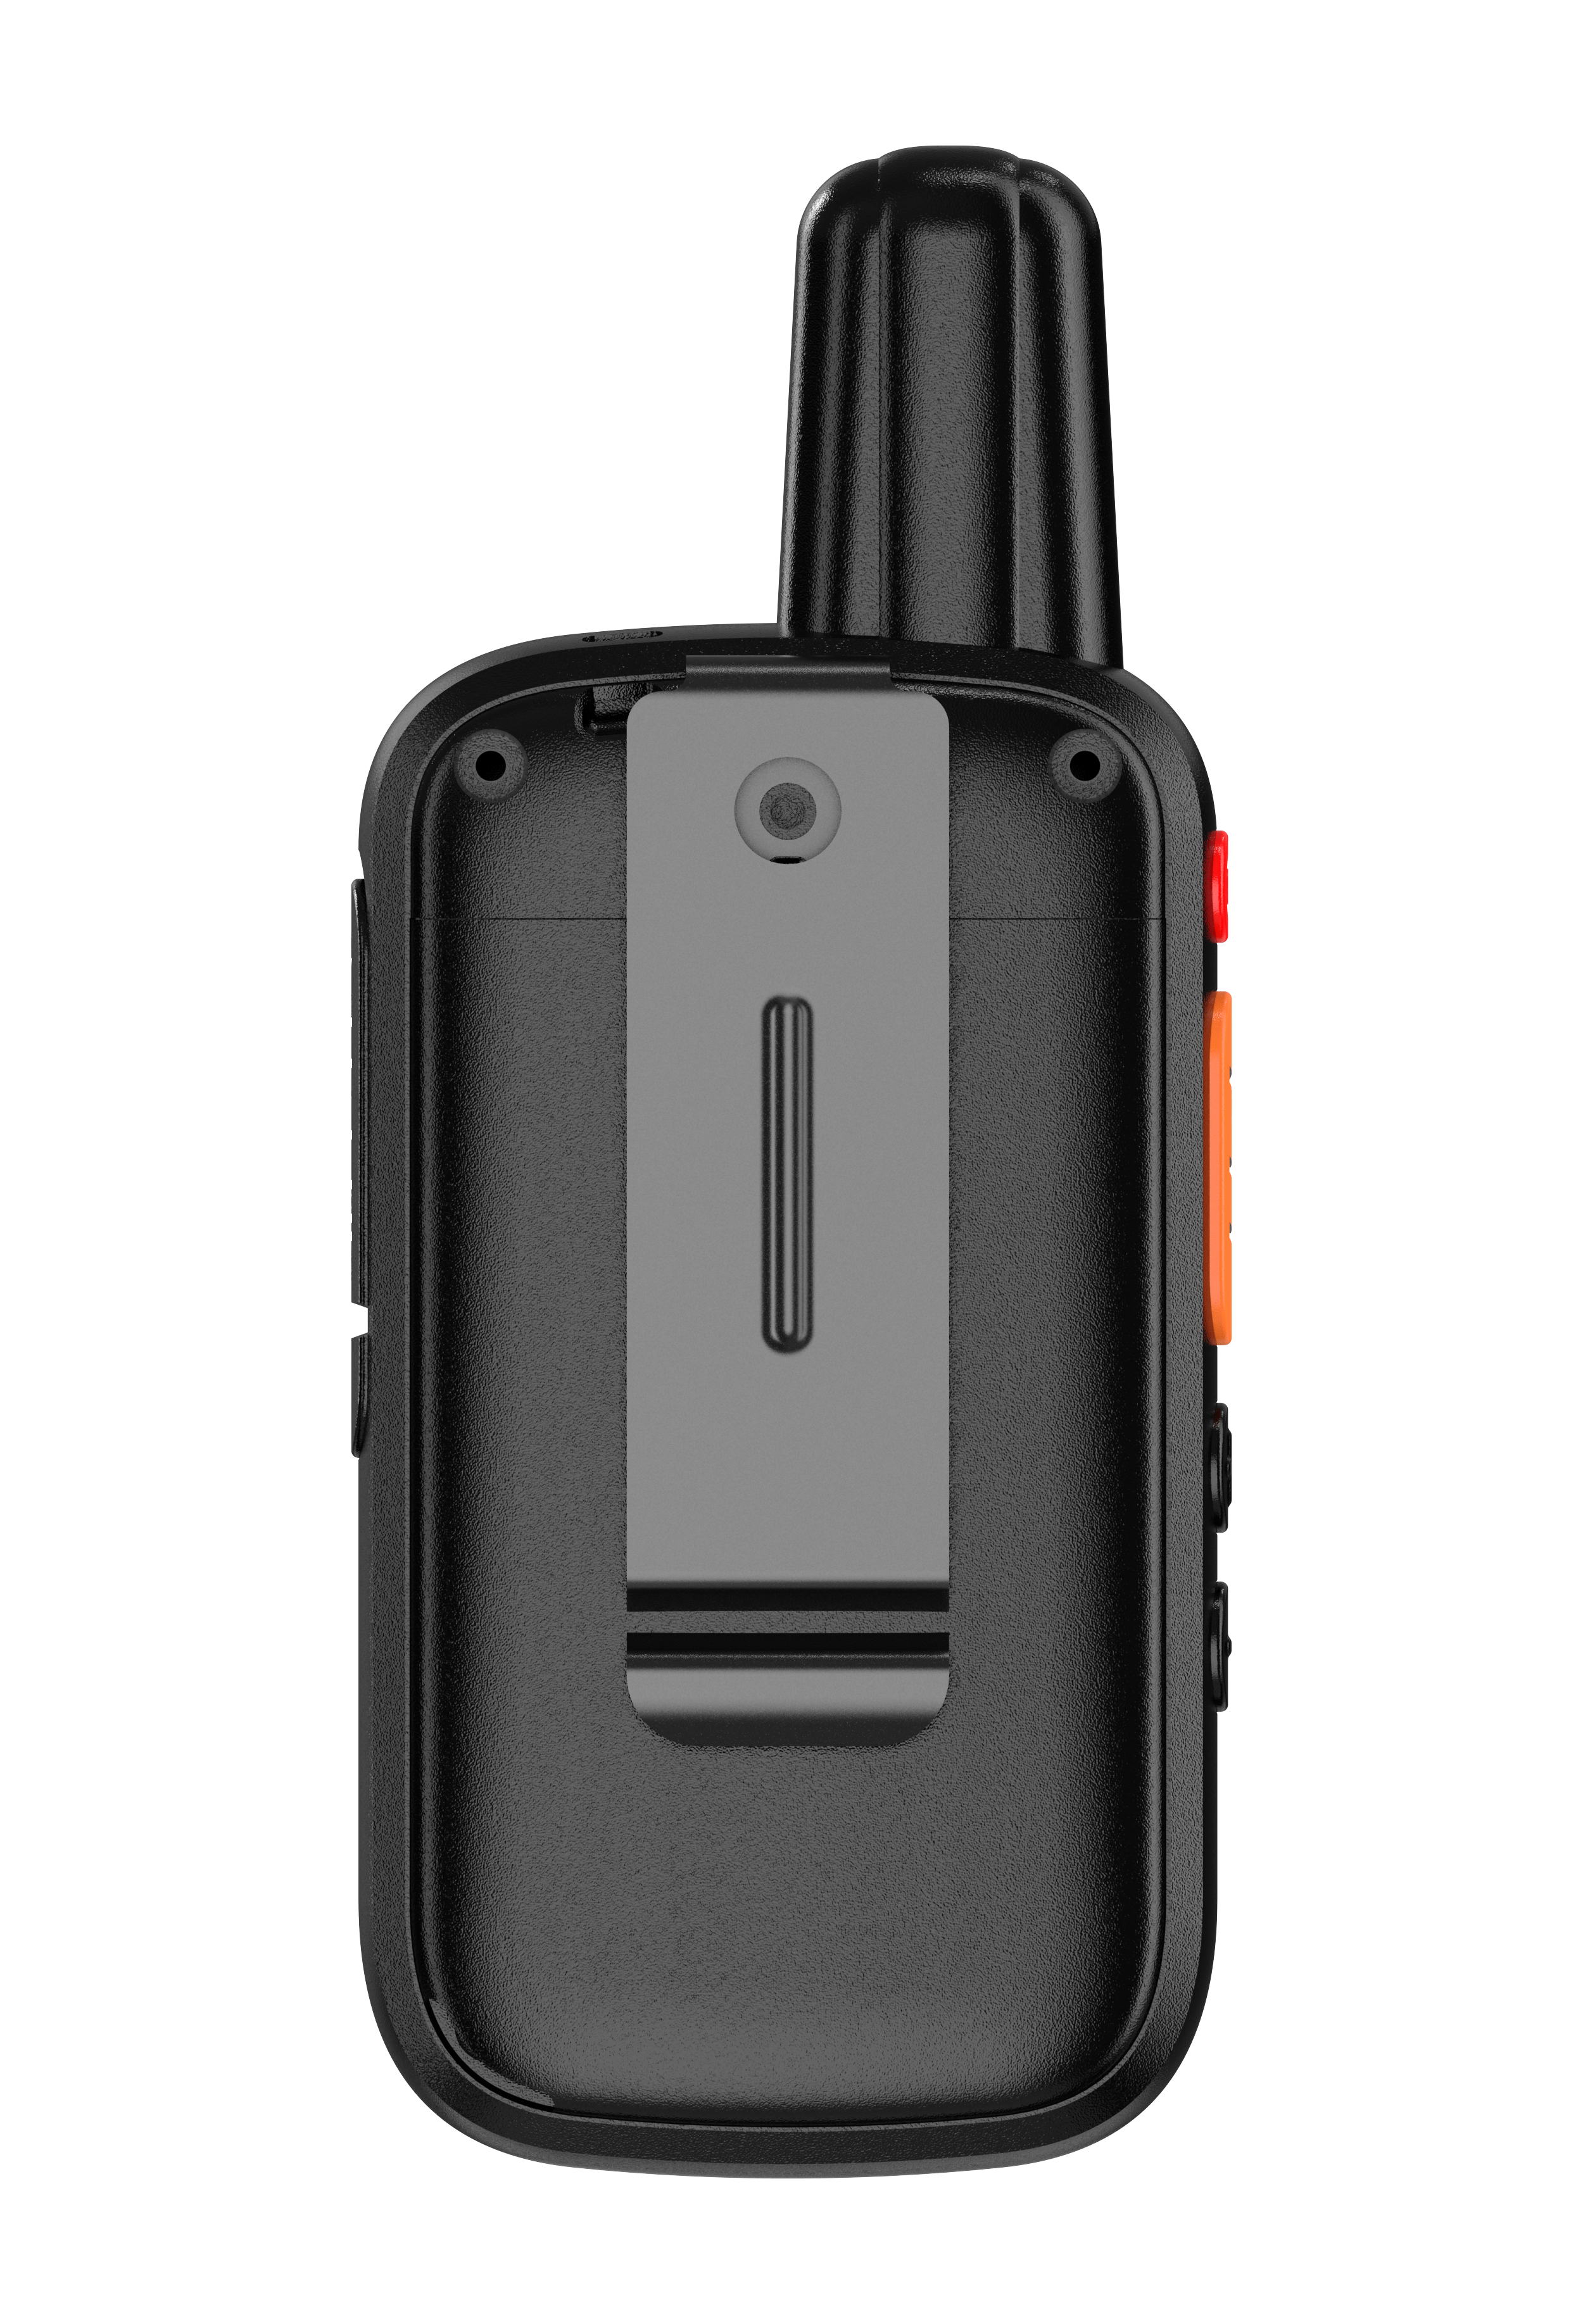 Daytech Rechargeable Wireless Intercoms 21 Channel walkie-talkie Battery Powered 1.5 Mile Long Range Wireless Intercom System